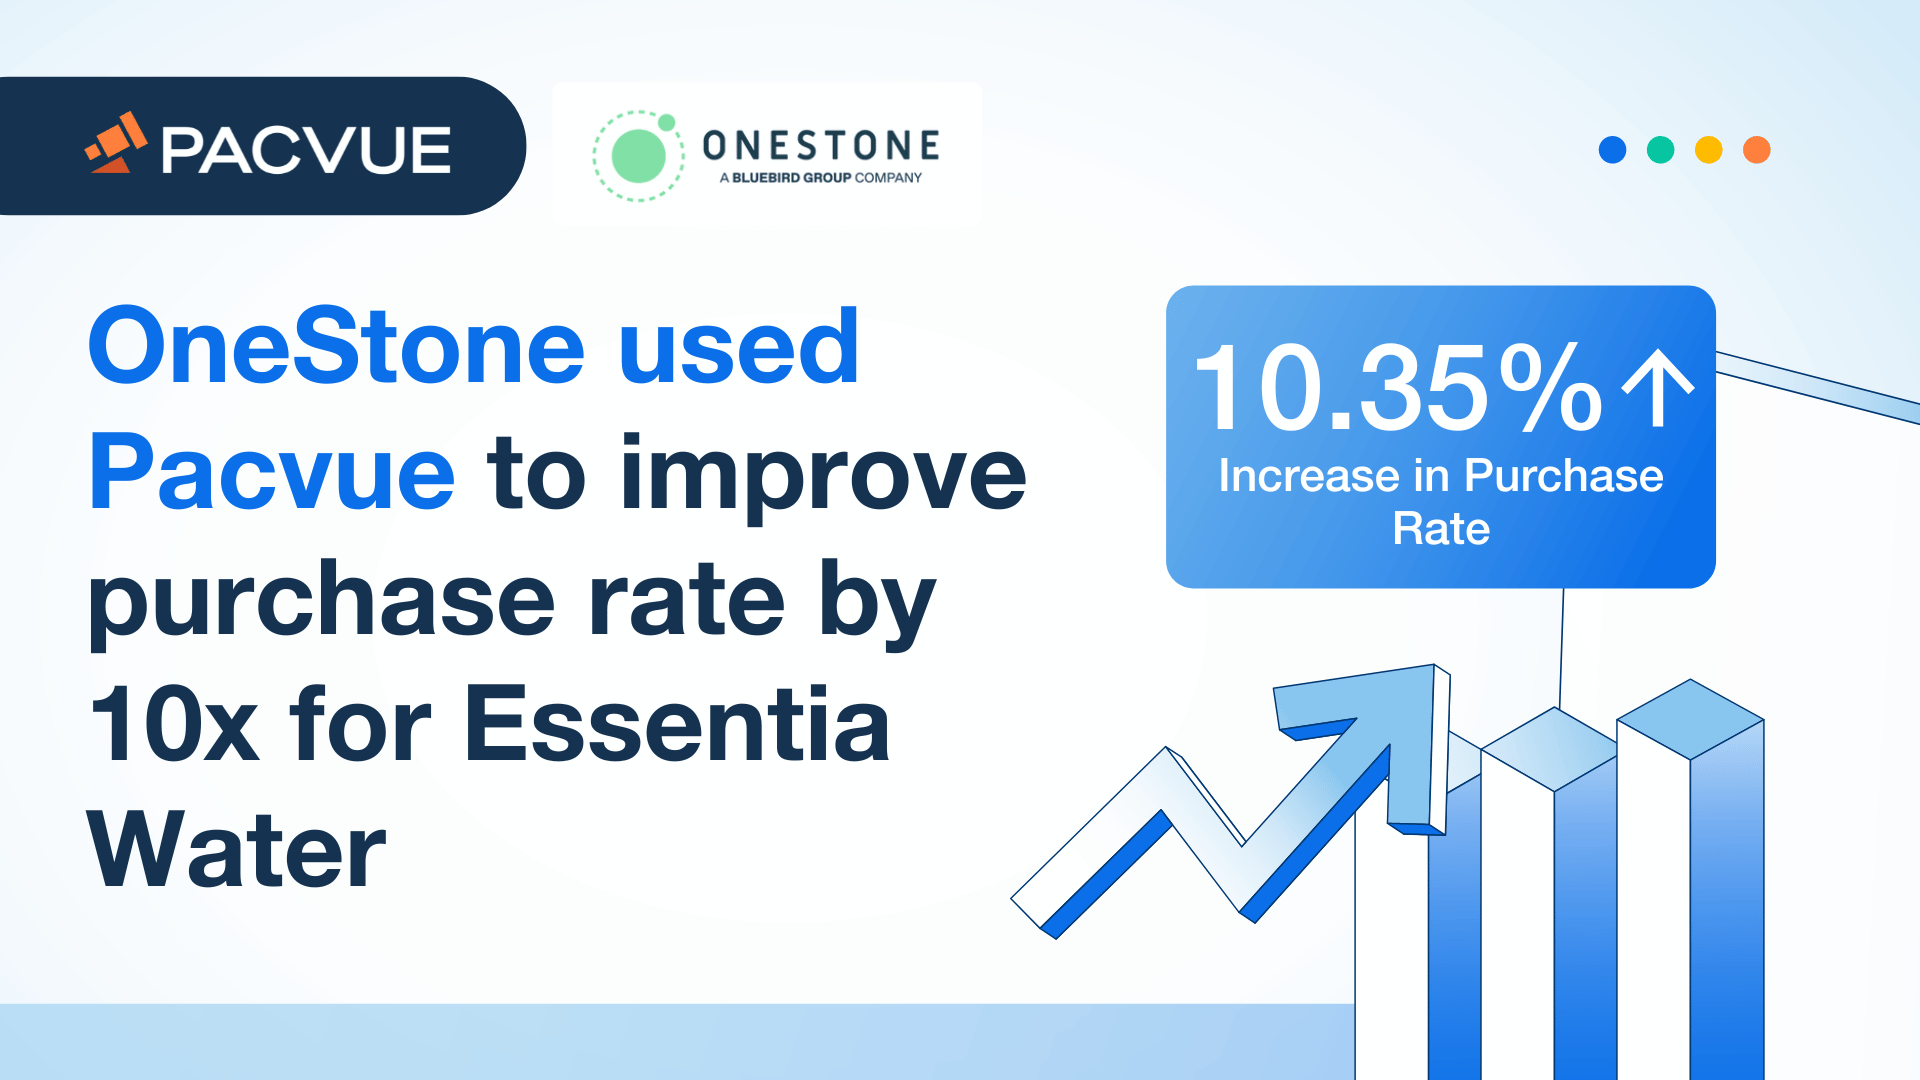 OneStone utilizó Pacvue para multiplicar por 10 el índice de compras de Essentia Water.